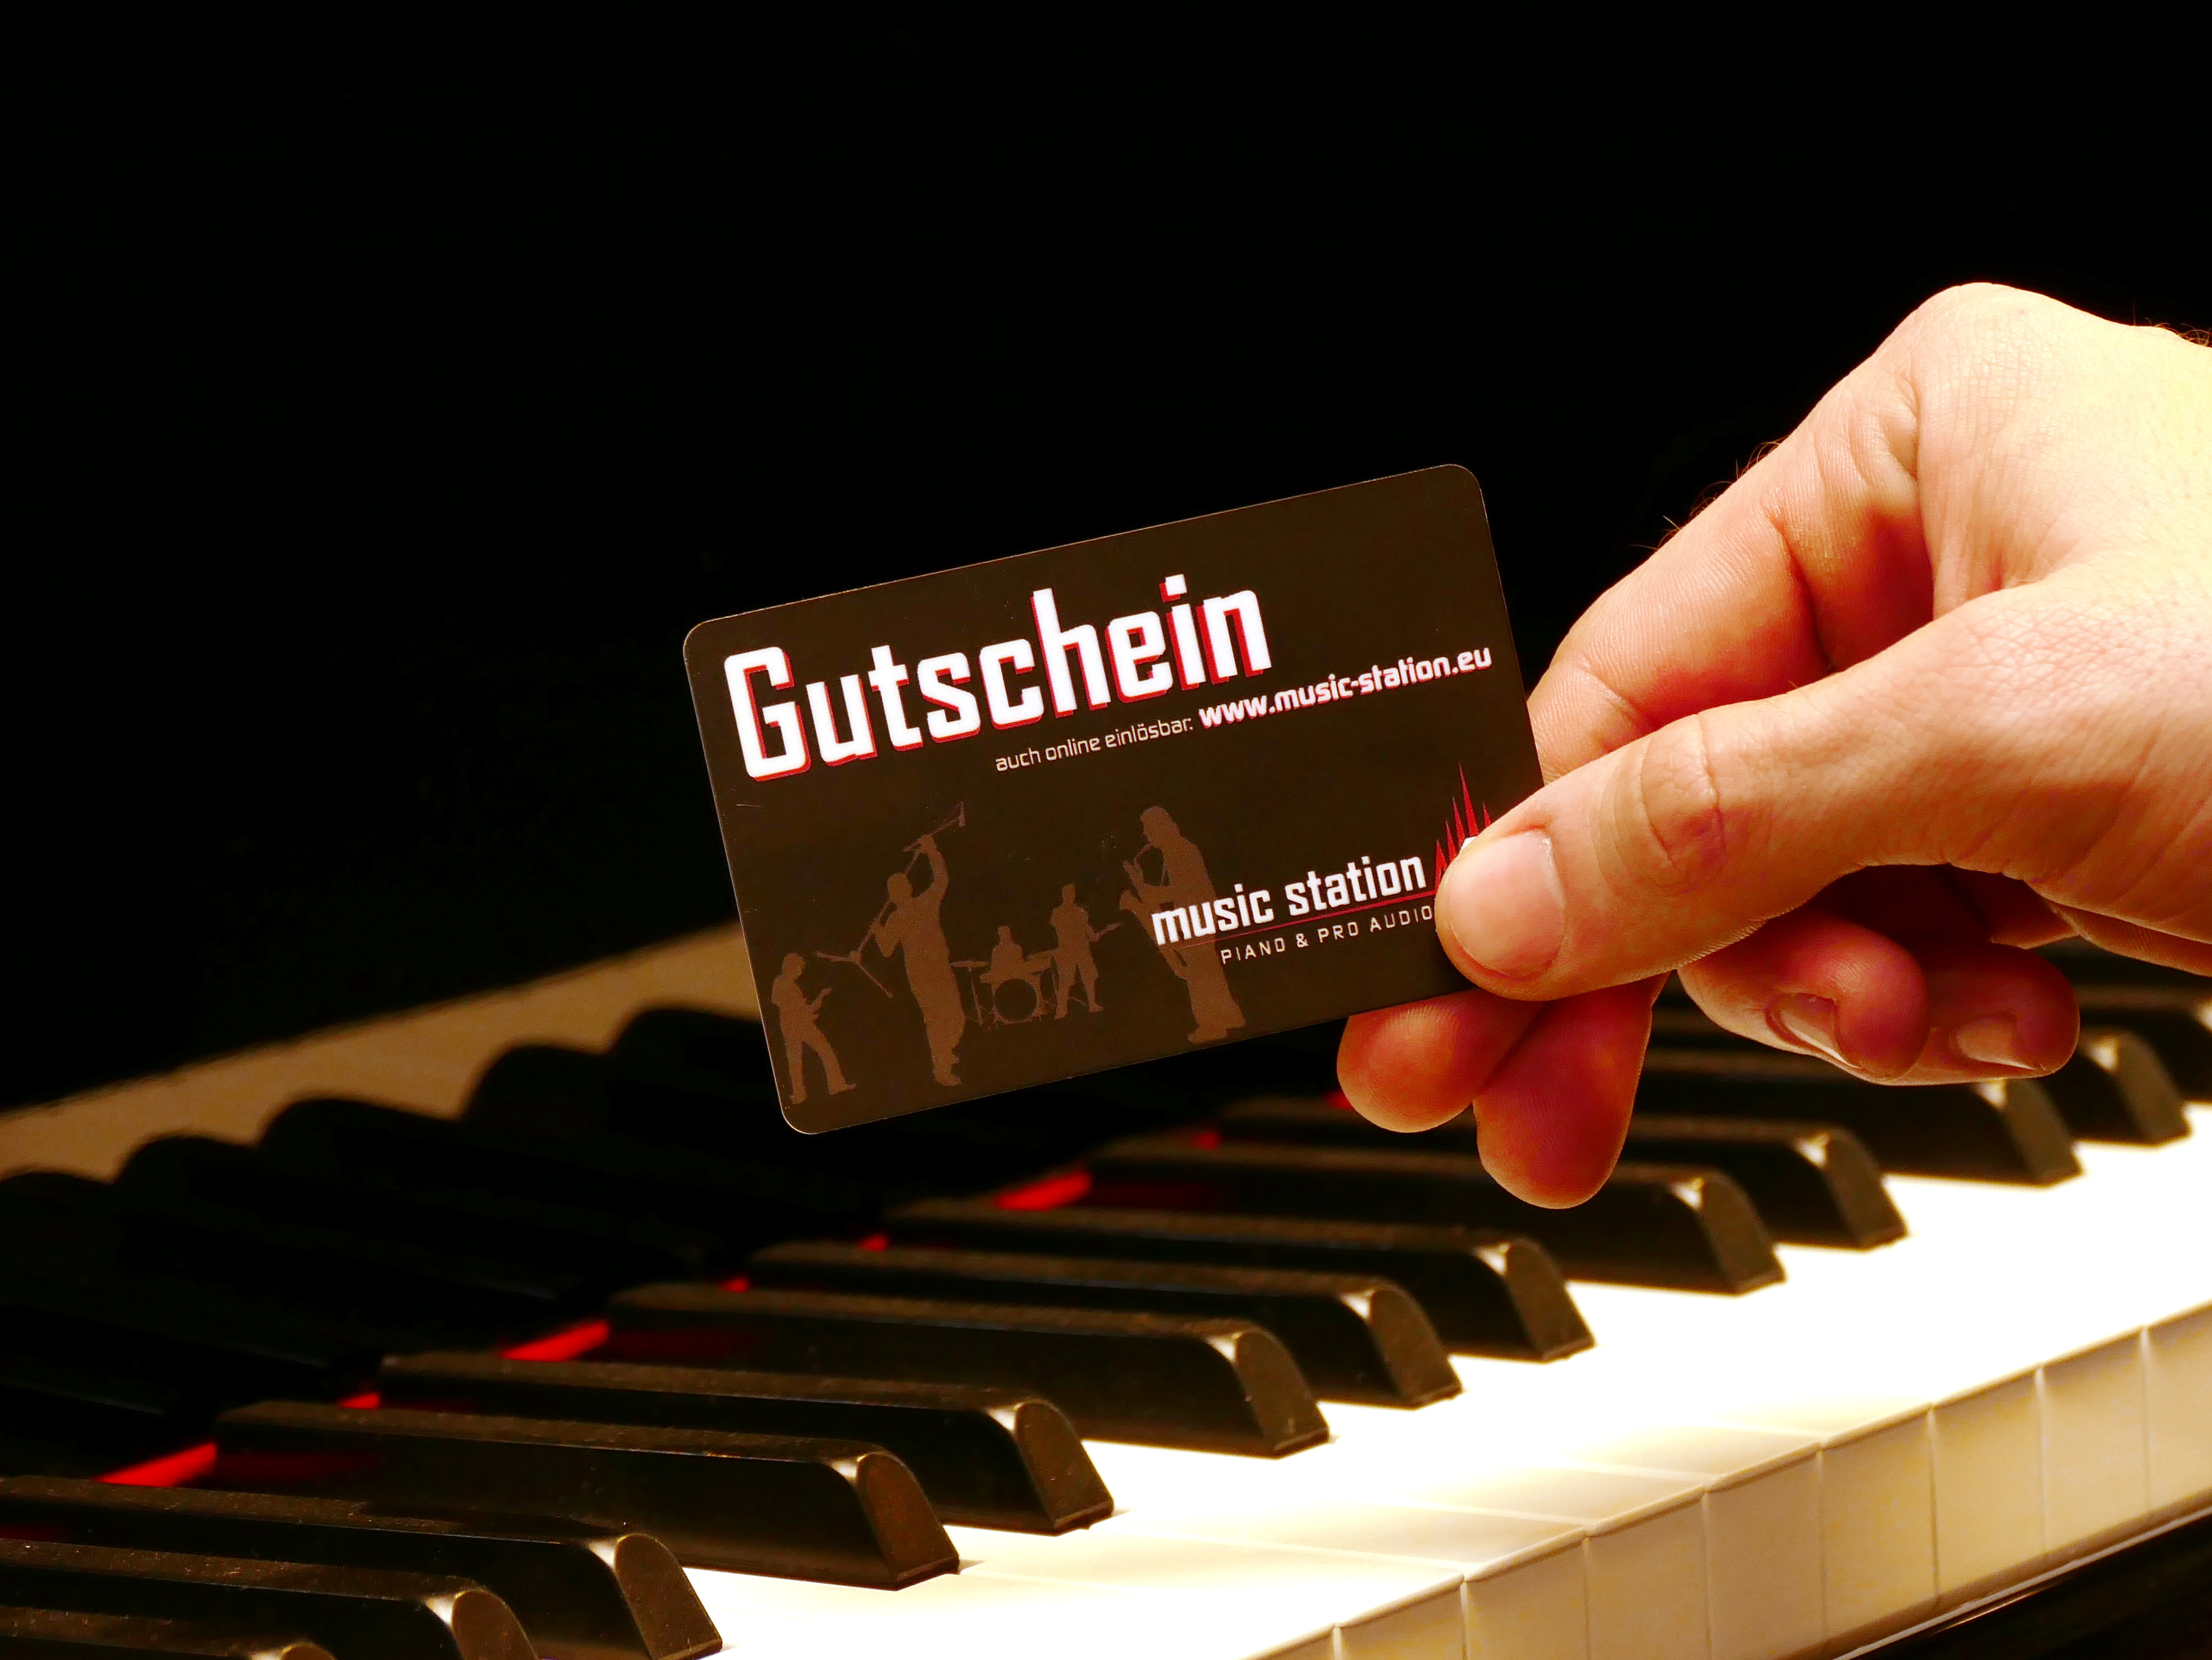 Music Station Gutschein 750 Euro